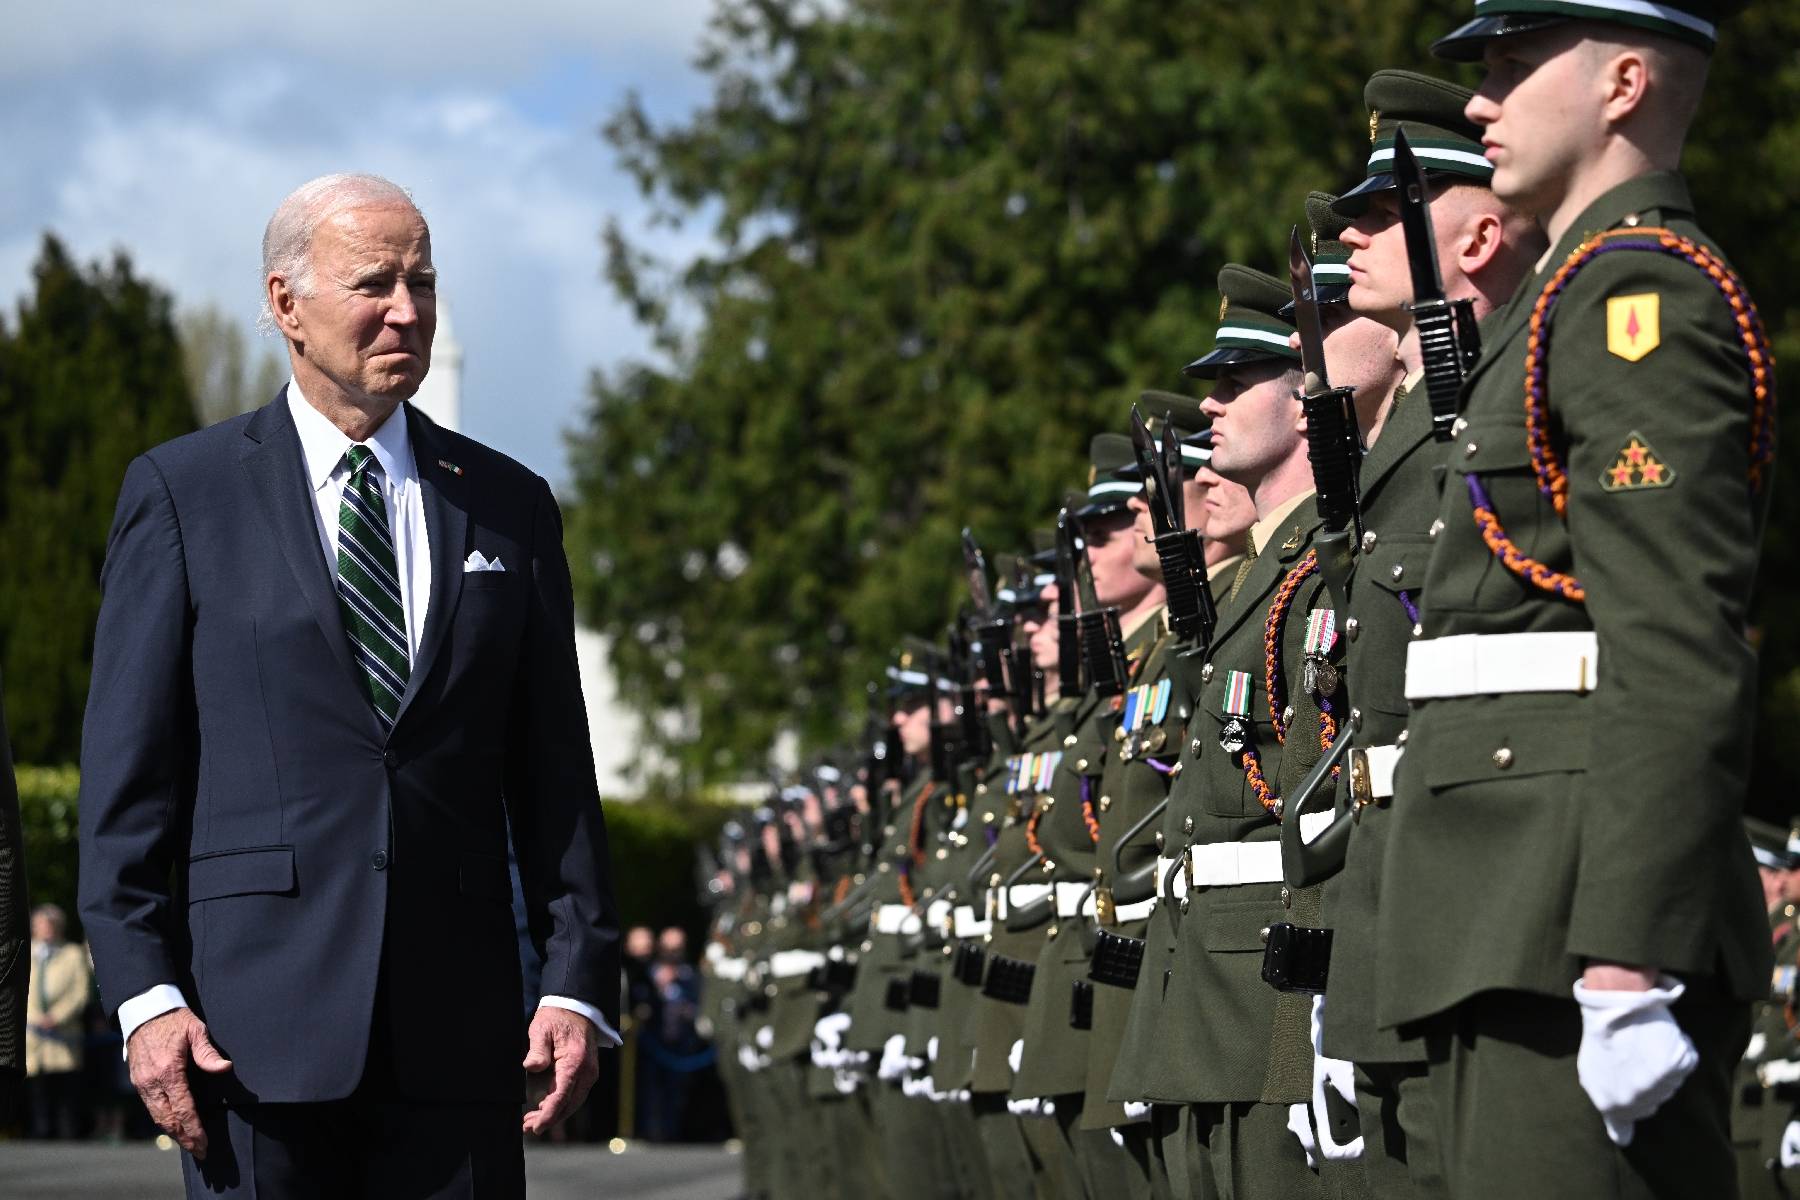 L'enquête sur la fuite de documents confidentiels américains avance, selon Biden